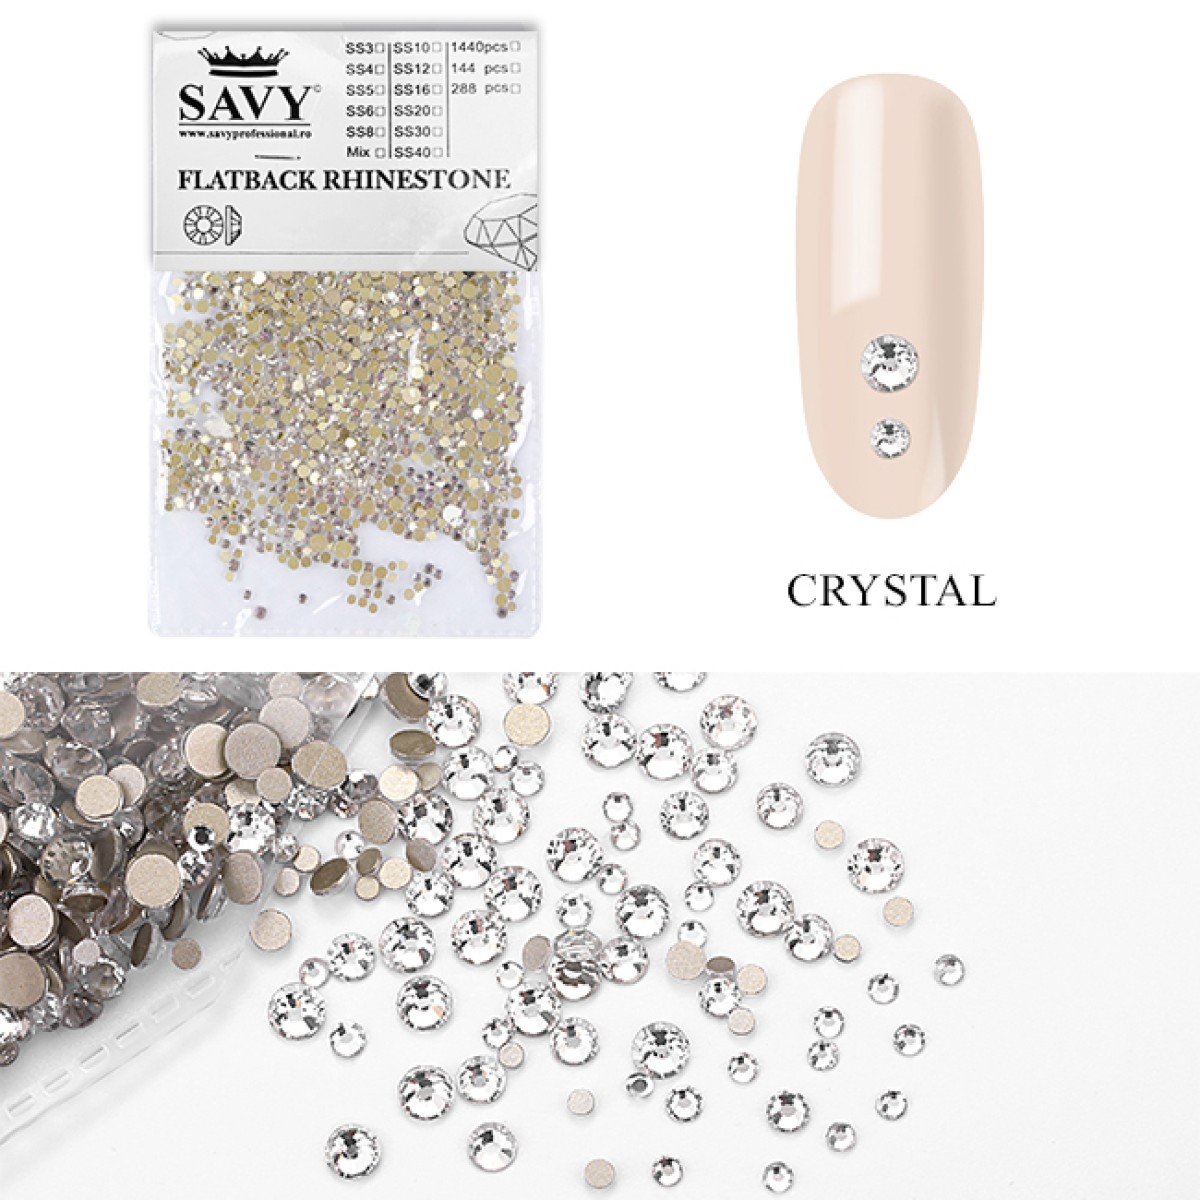 Cristale de unghii din sticla, Nr27, Crystal, 1440 buc | Savy Professional